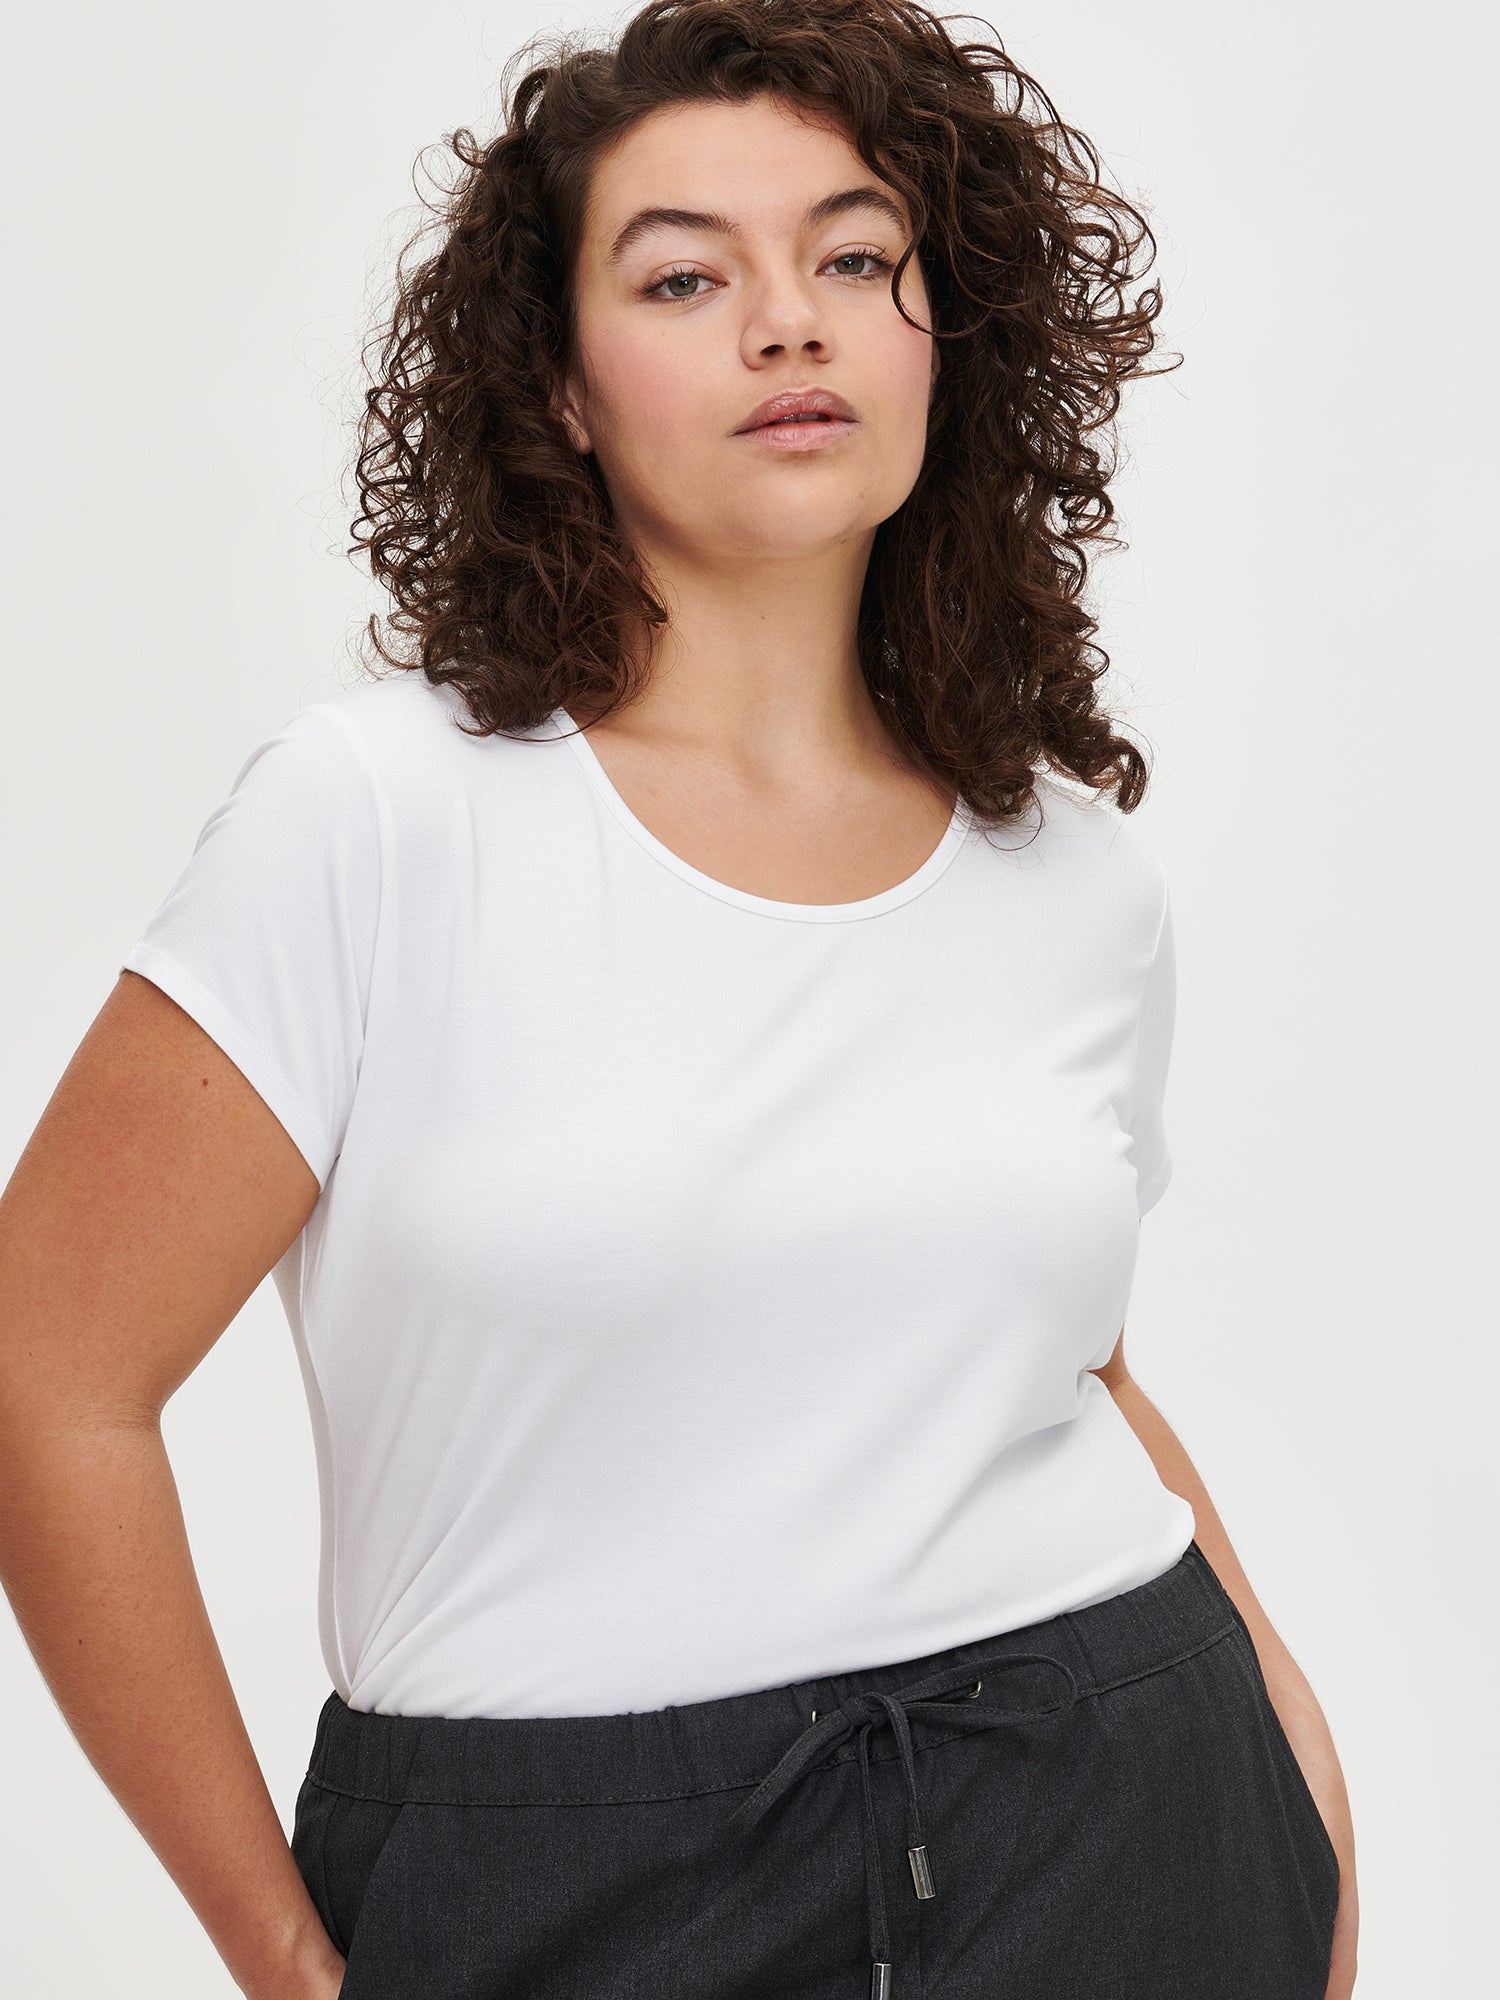 Naisten yksivärinen valkoinen Viskoosi Basic t-paita pyöreällä pääntiellä.